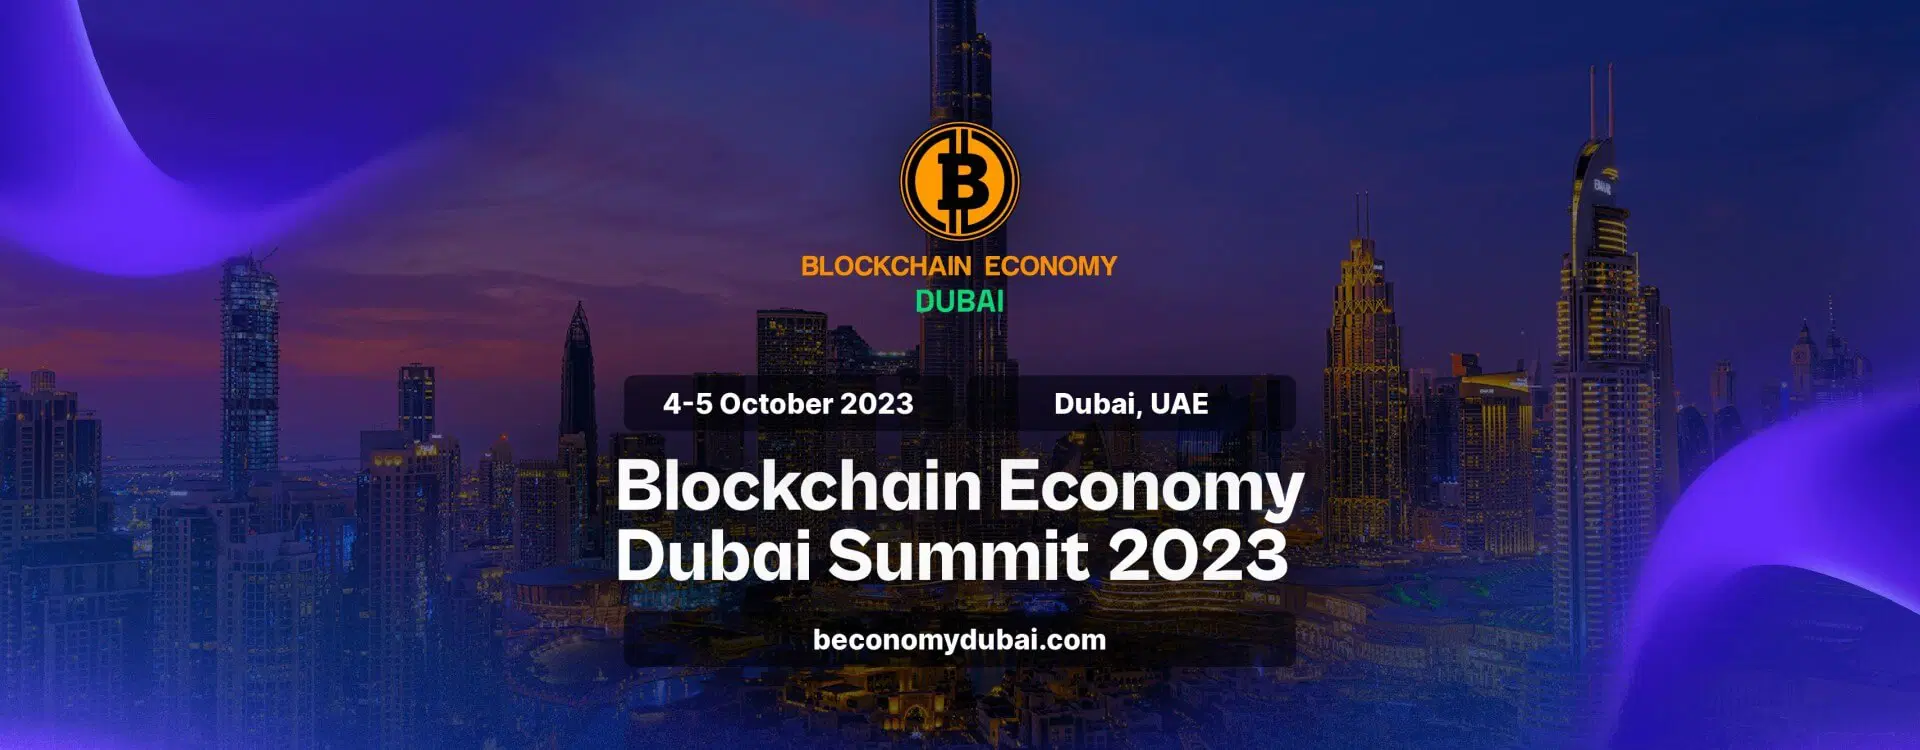 Blockchain Summit Dubai 2023